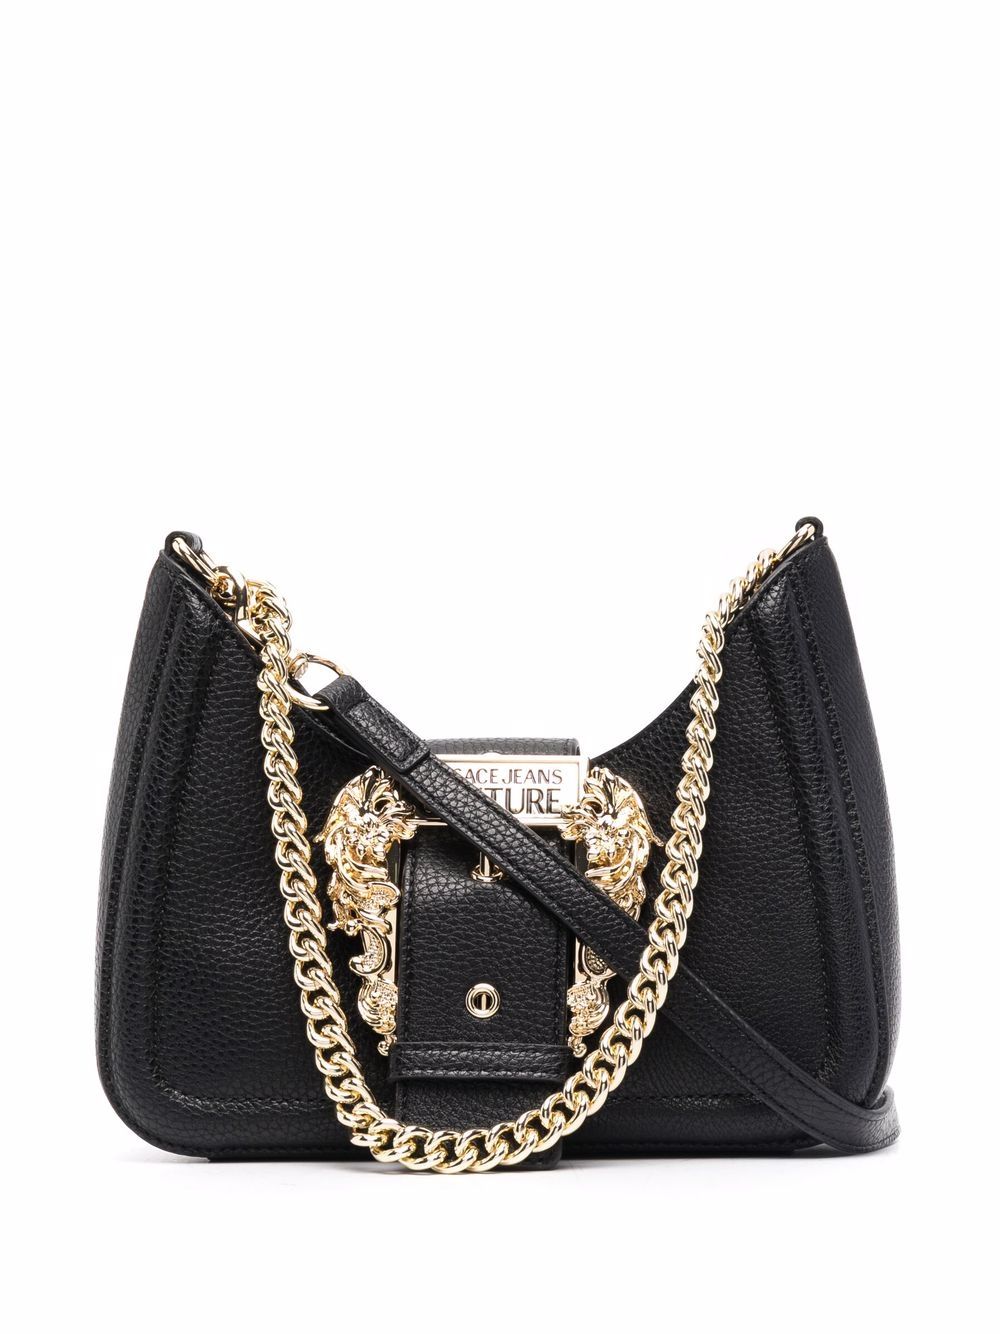 фото Versace jeans couture сумка через плечо с крупной пряжкой